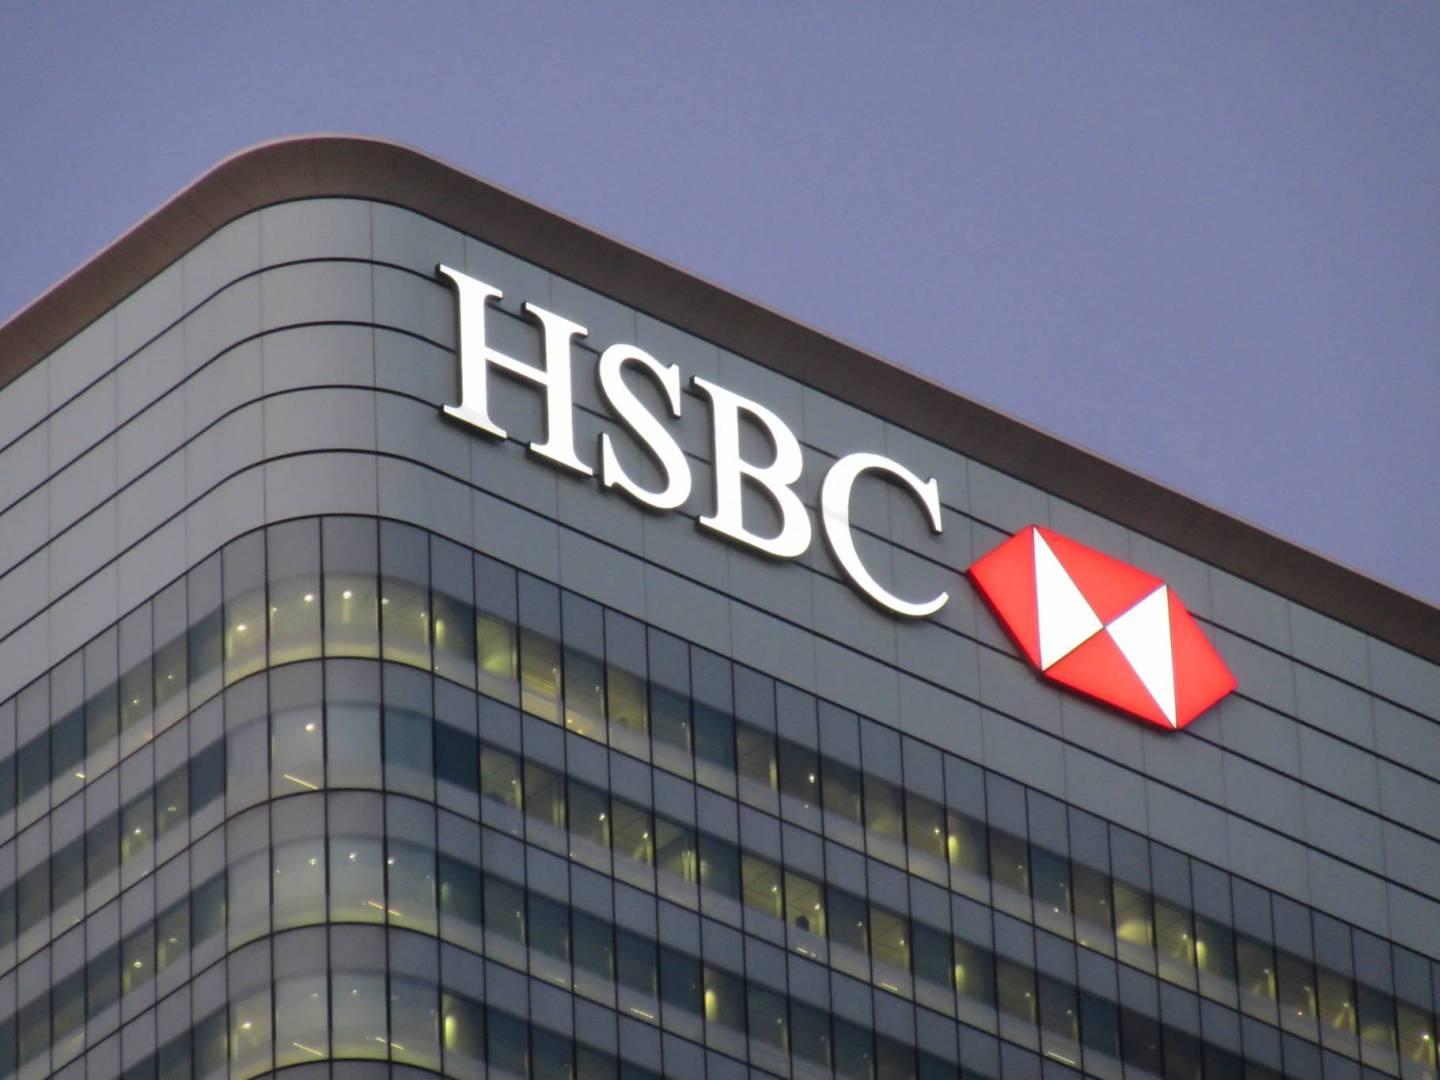 بانک سرمایه گذاری اروپا (EIB) اولین اوراق قرضه پوند دیجیتال را با همکاری HSBC منتشر کرد